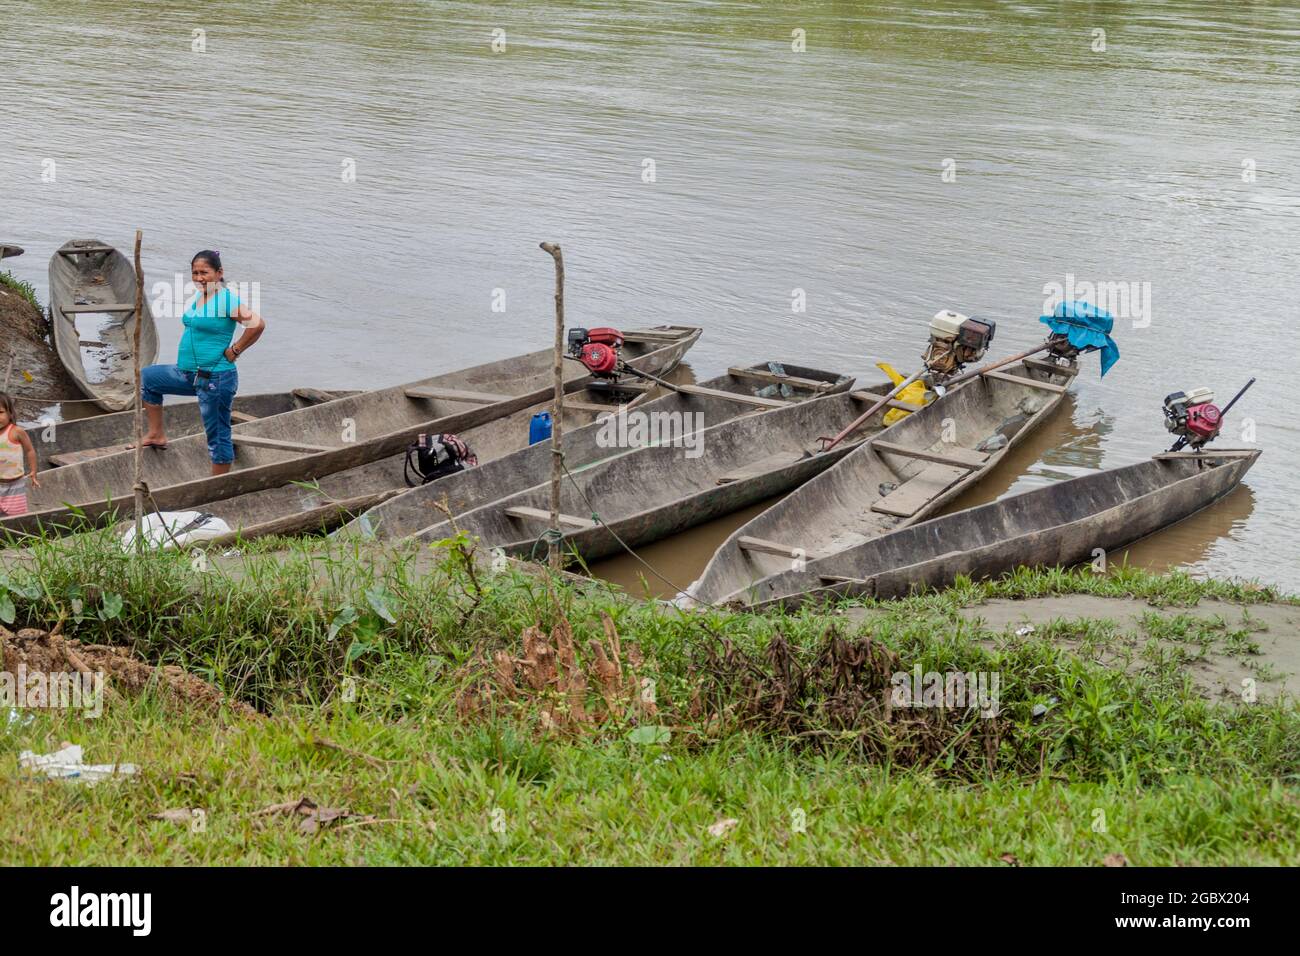 PANTOJA, PERÚ - 9 DE JULIO de 2015: Aldeanos en una canoa de dugout llamada Peke Peke en un río Napo, Perú Foto de stock